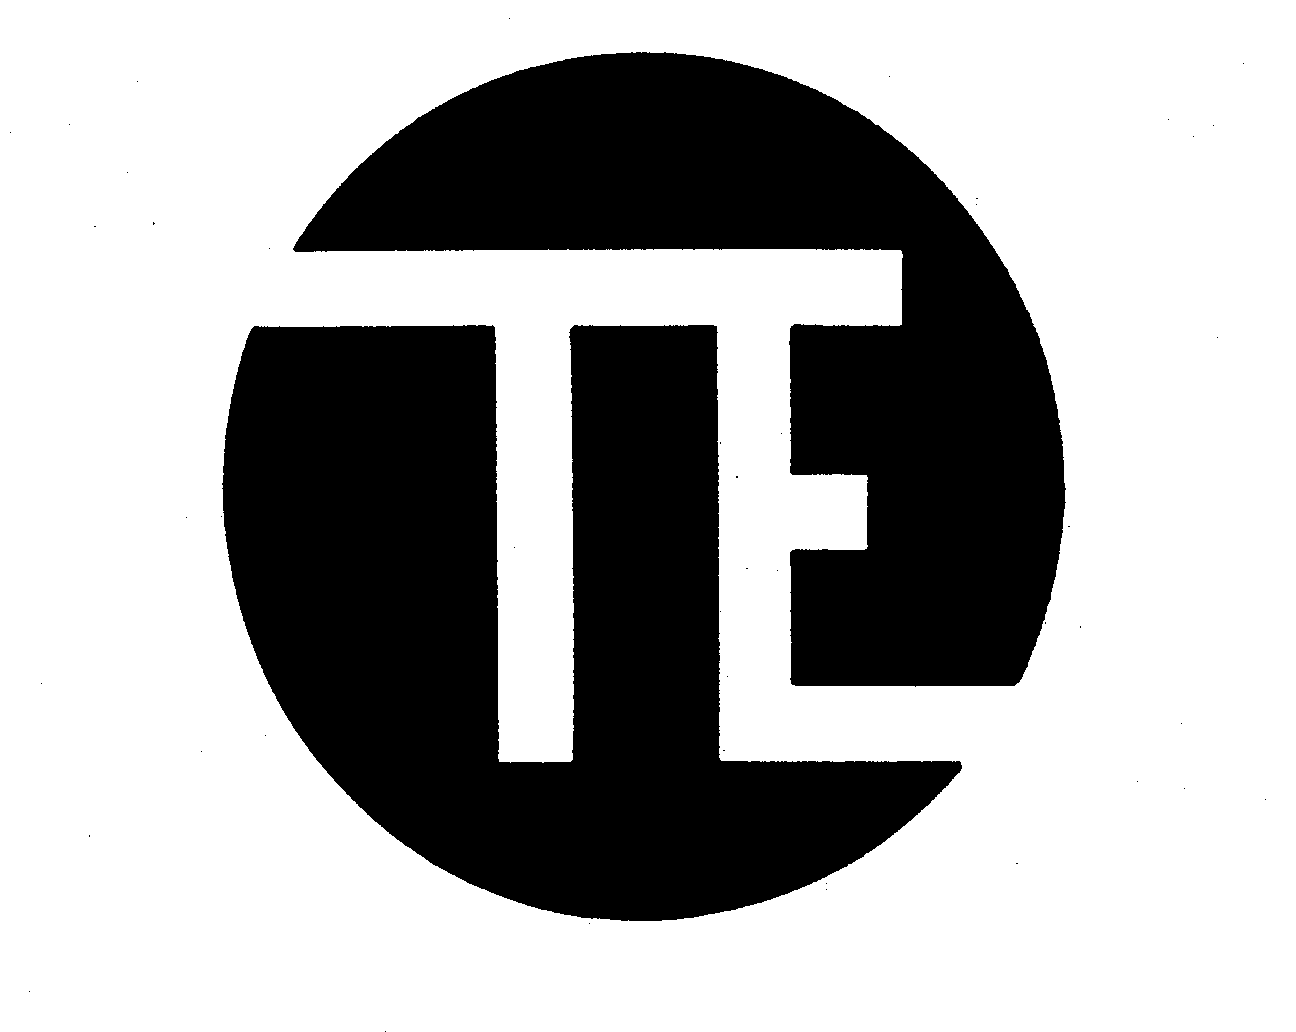  T E